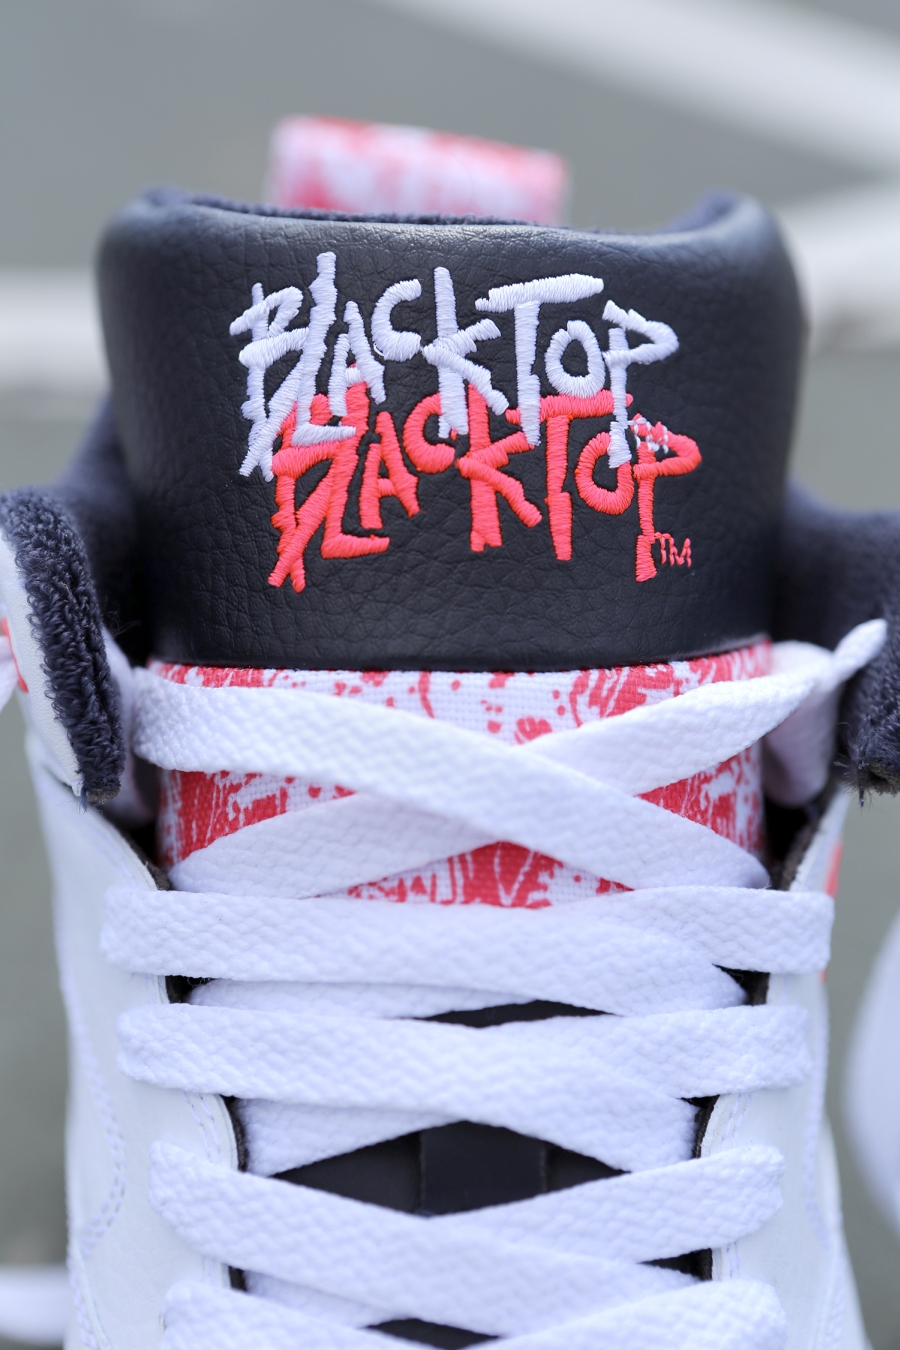 Equipar Frustración al límite Reebok Classic's Blacktop Collection Returns - SneakerNews.com